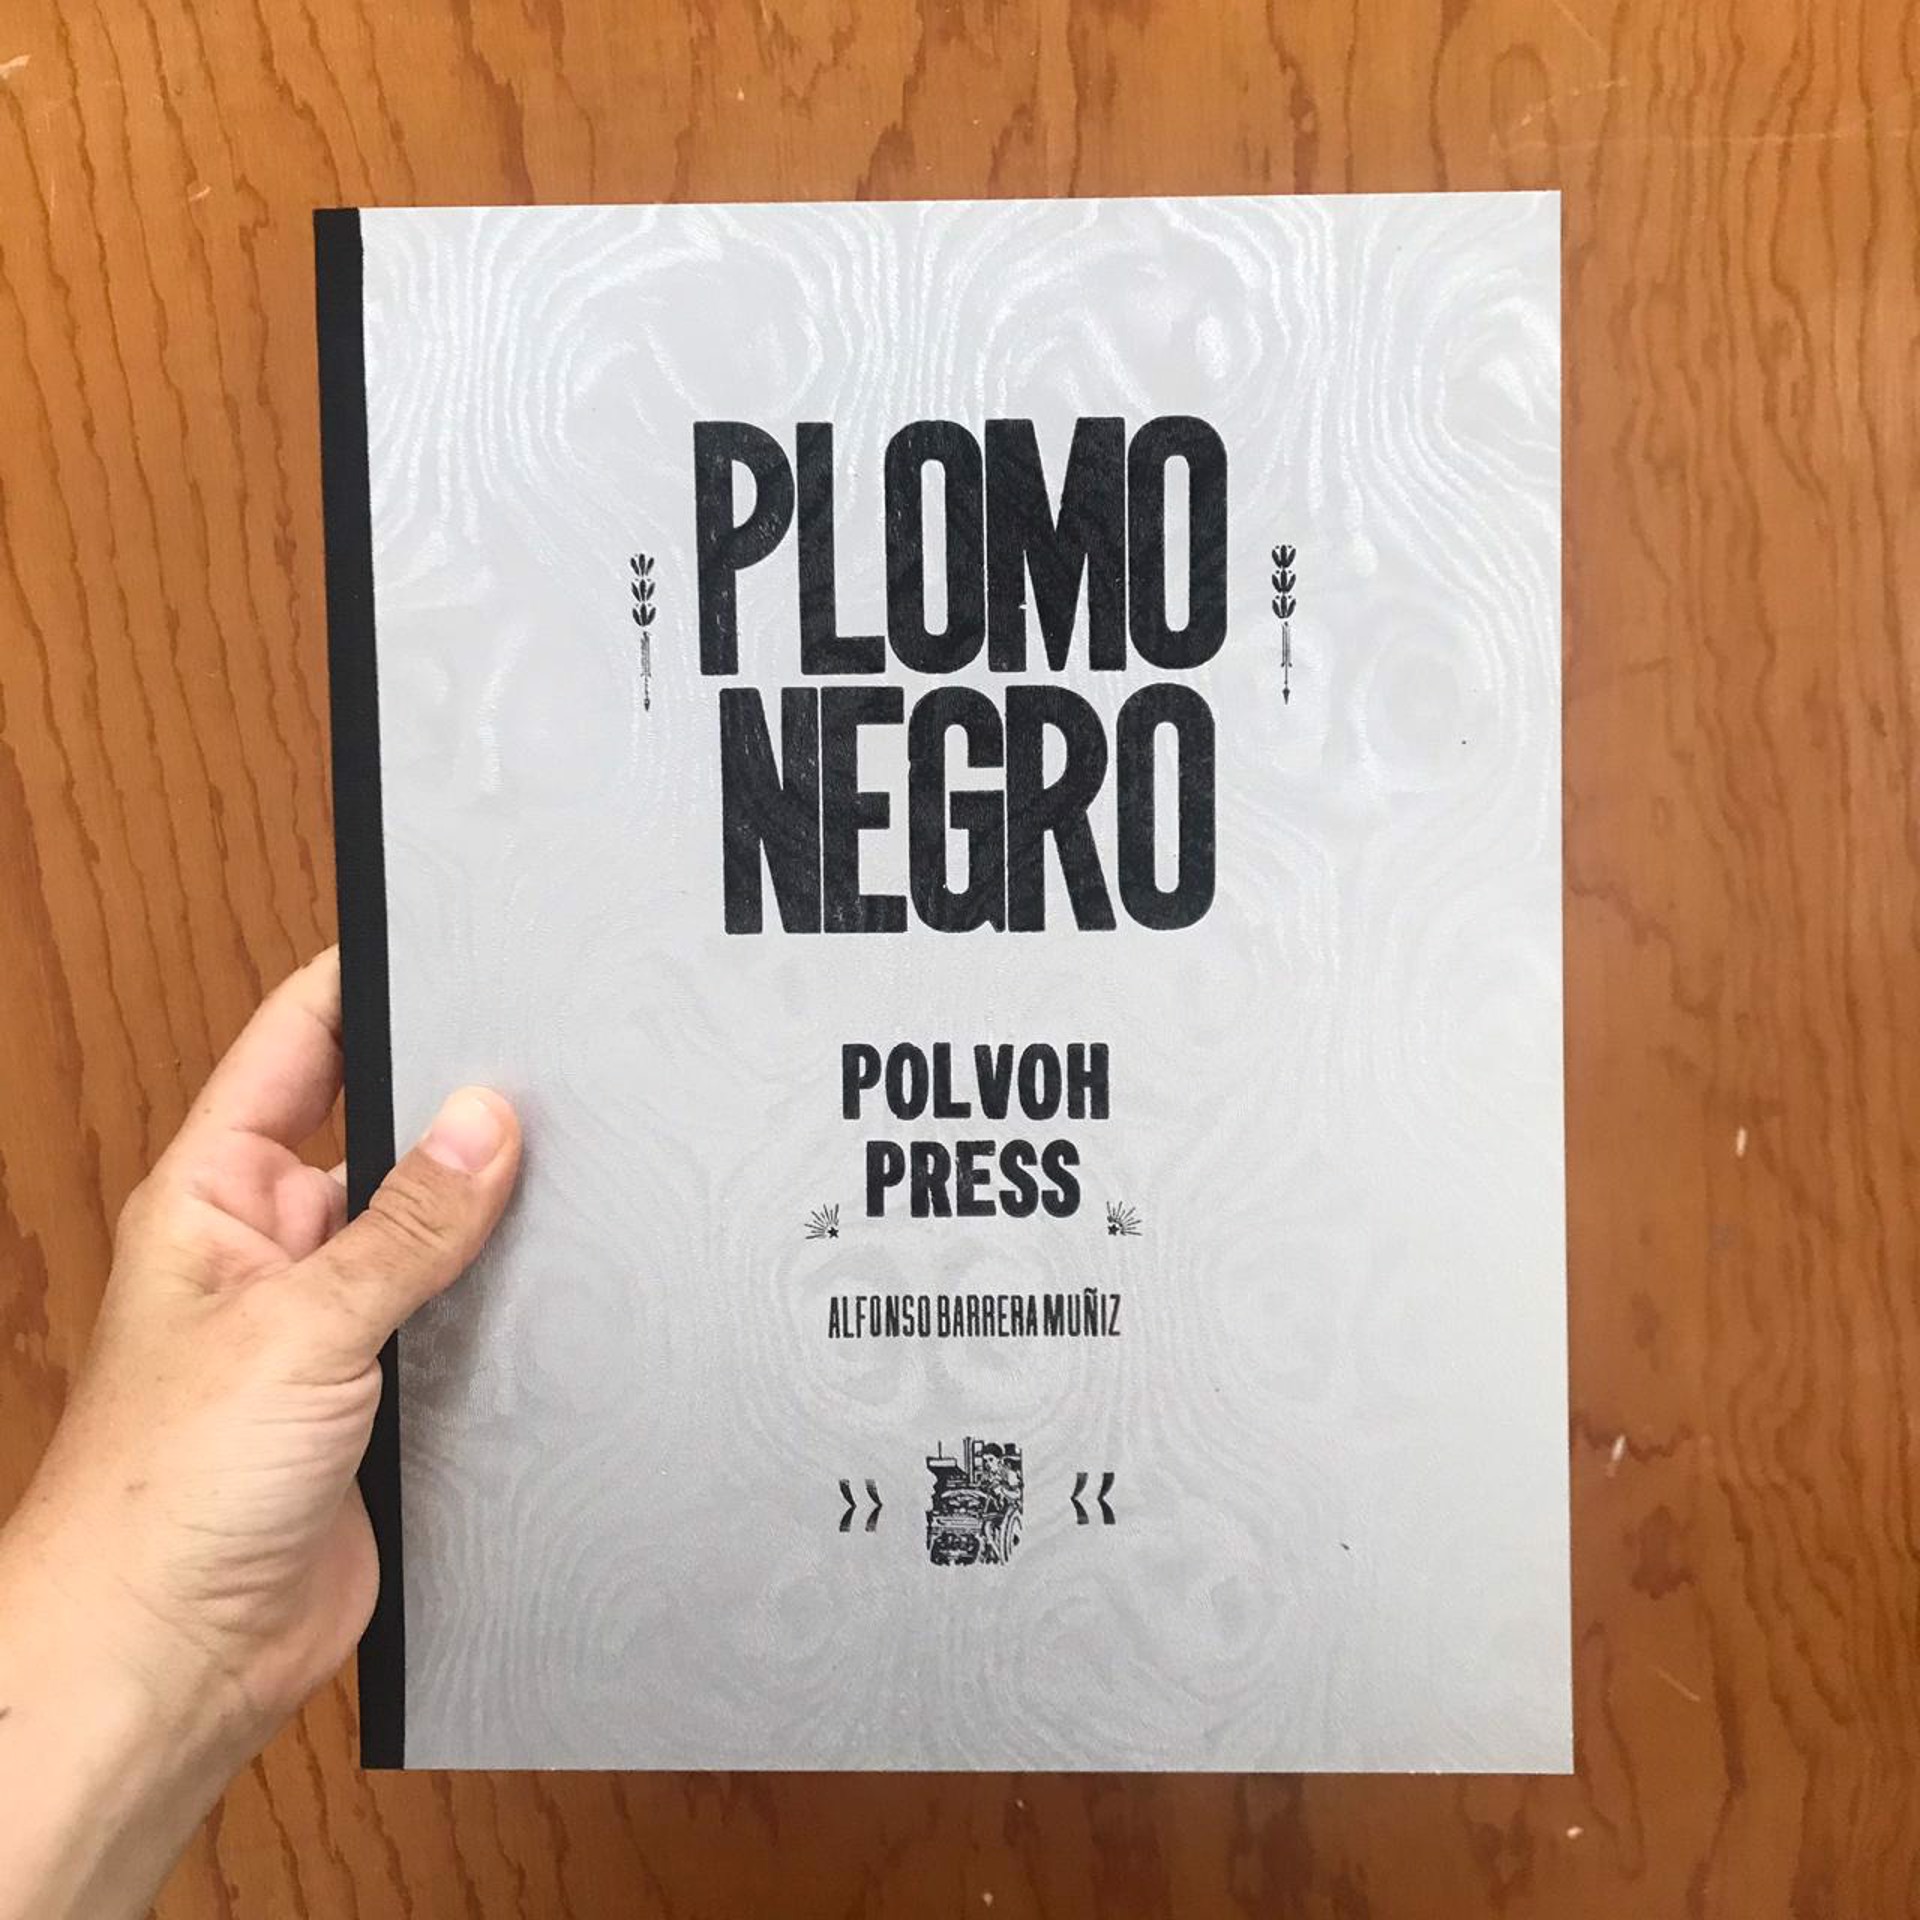 Plomo Negro by Polvoh Press